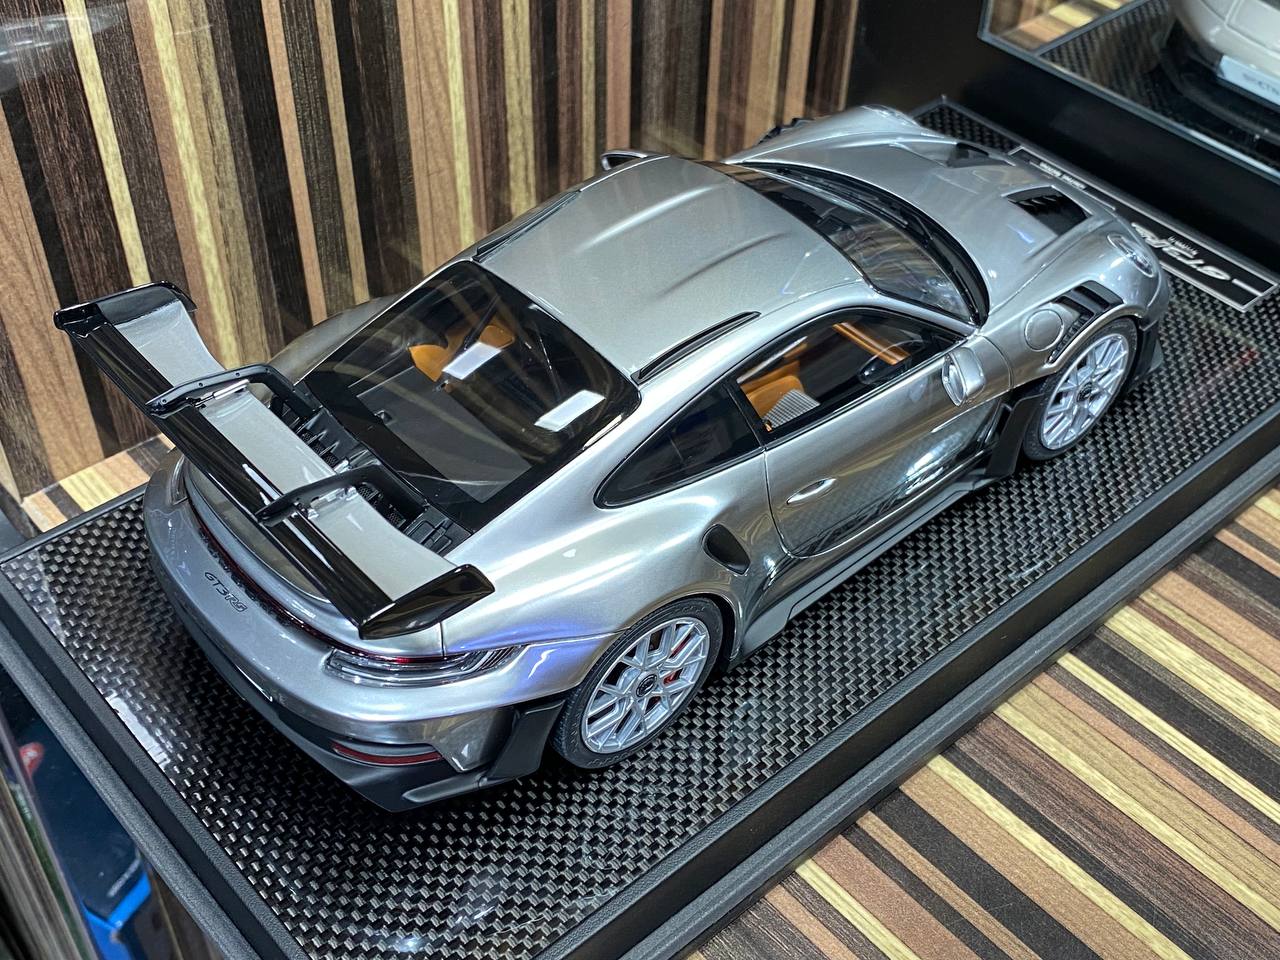 Porsche 911 GT3 RS 992.1 Silver Wheels silver steels by Timothy & Pierre|Sold in Dturman.com Dubai UAE.